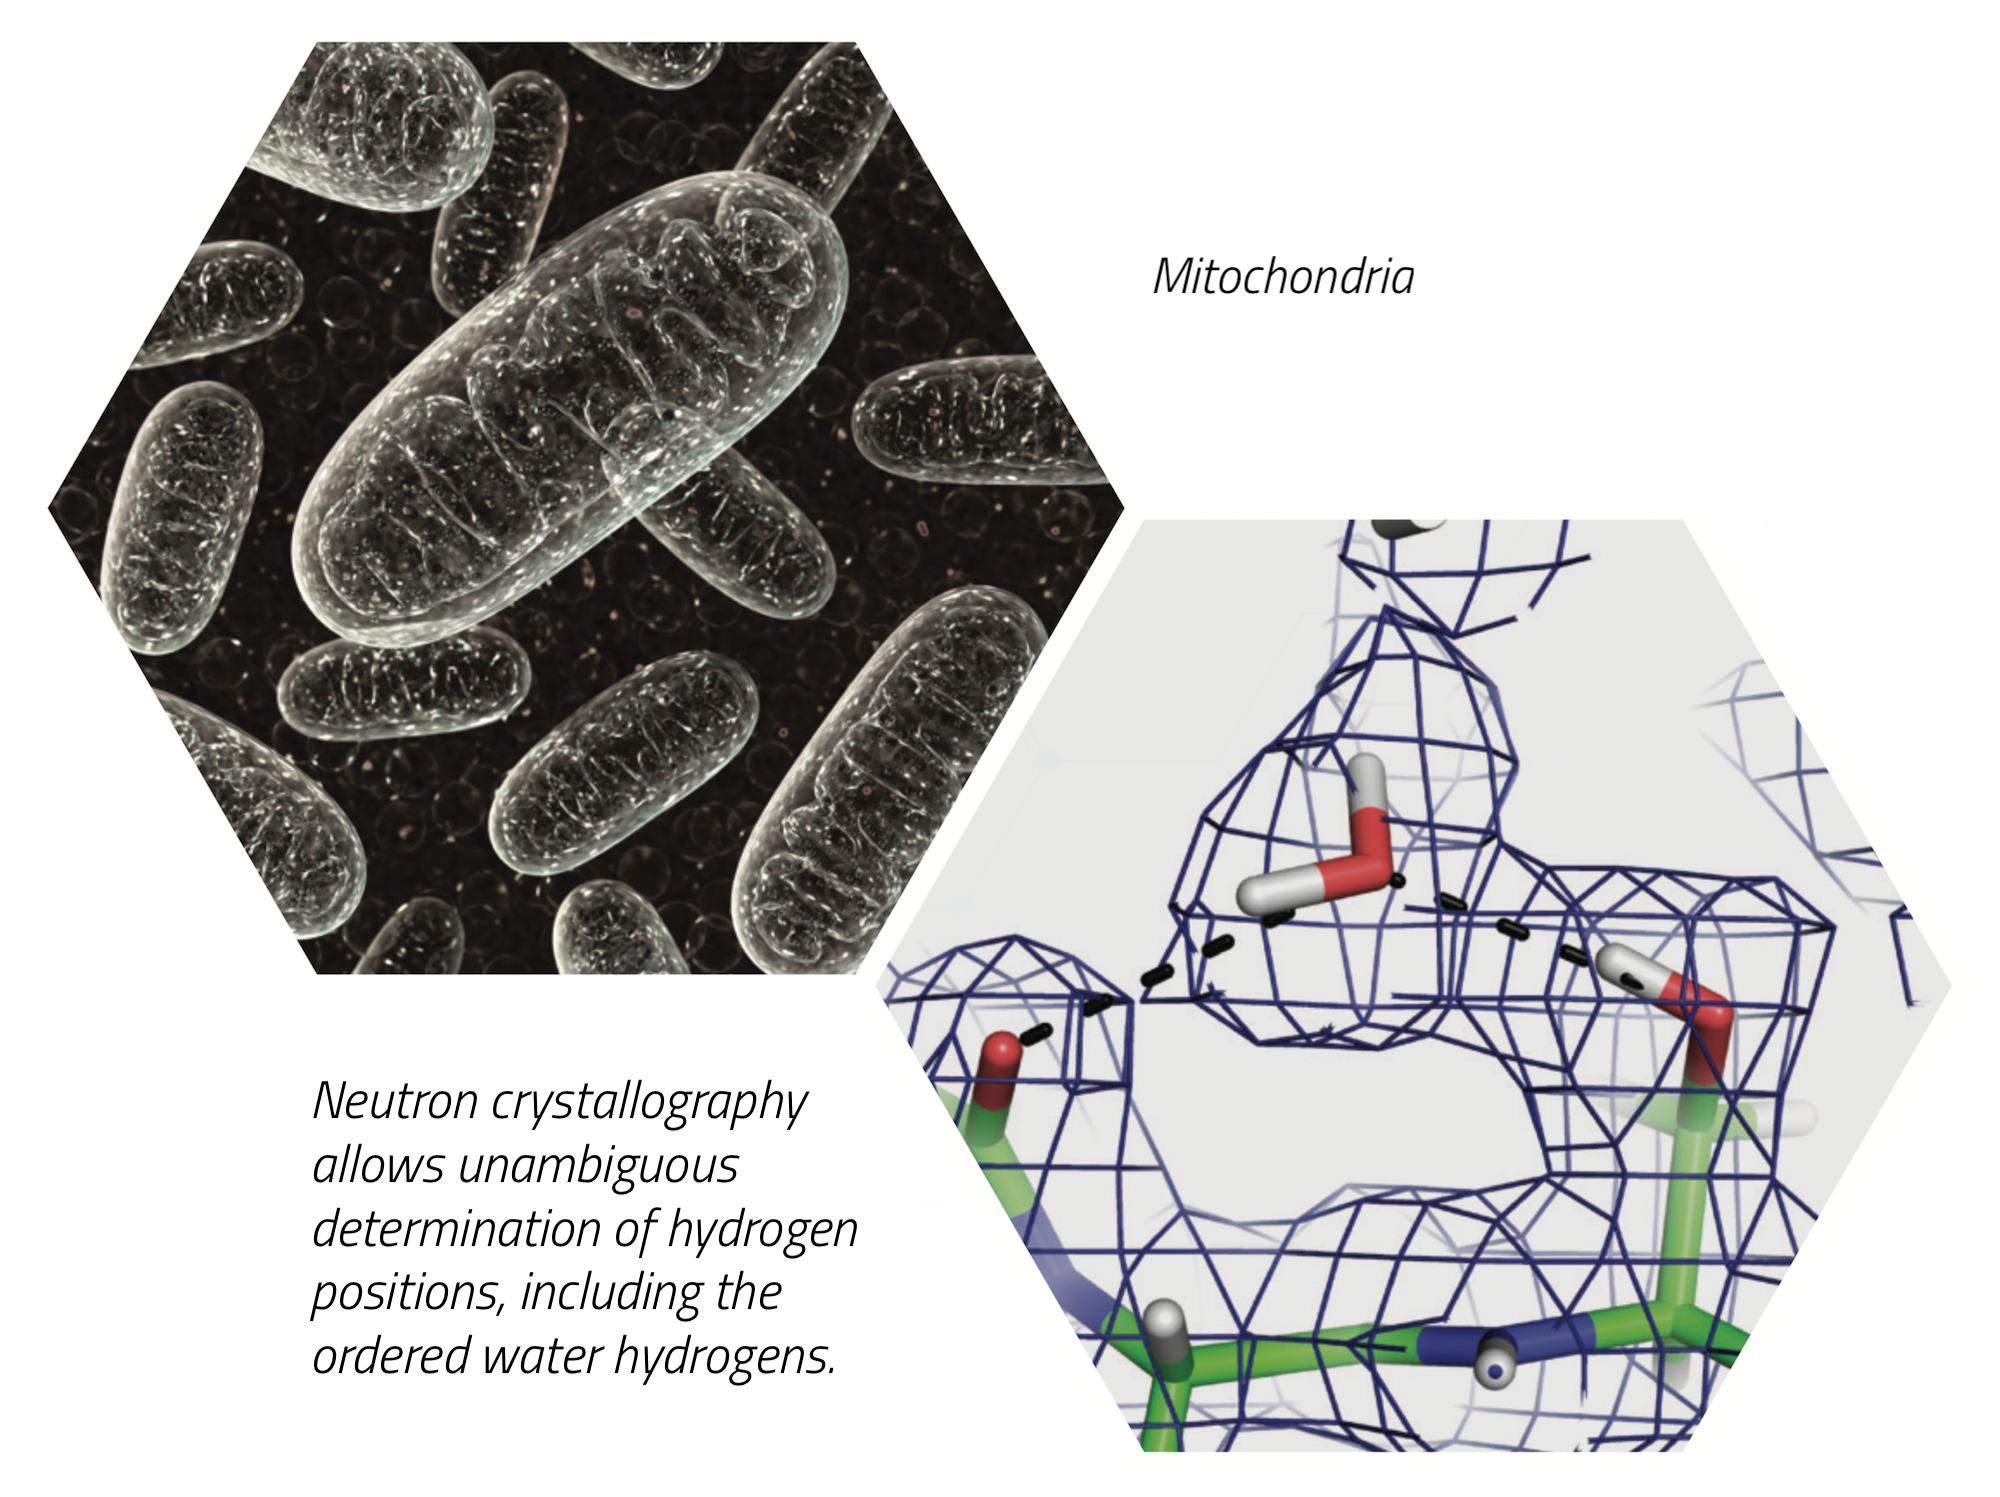 NMX mitochondria neutron crystallography